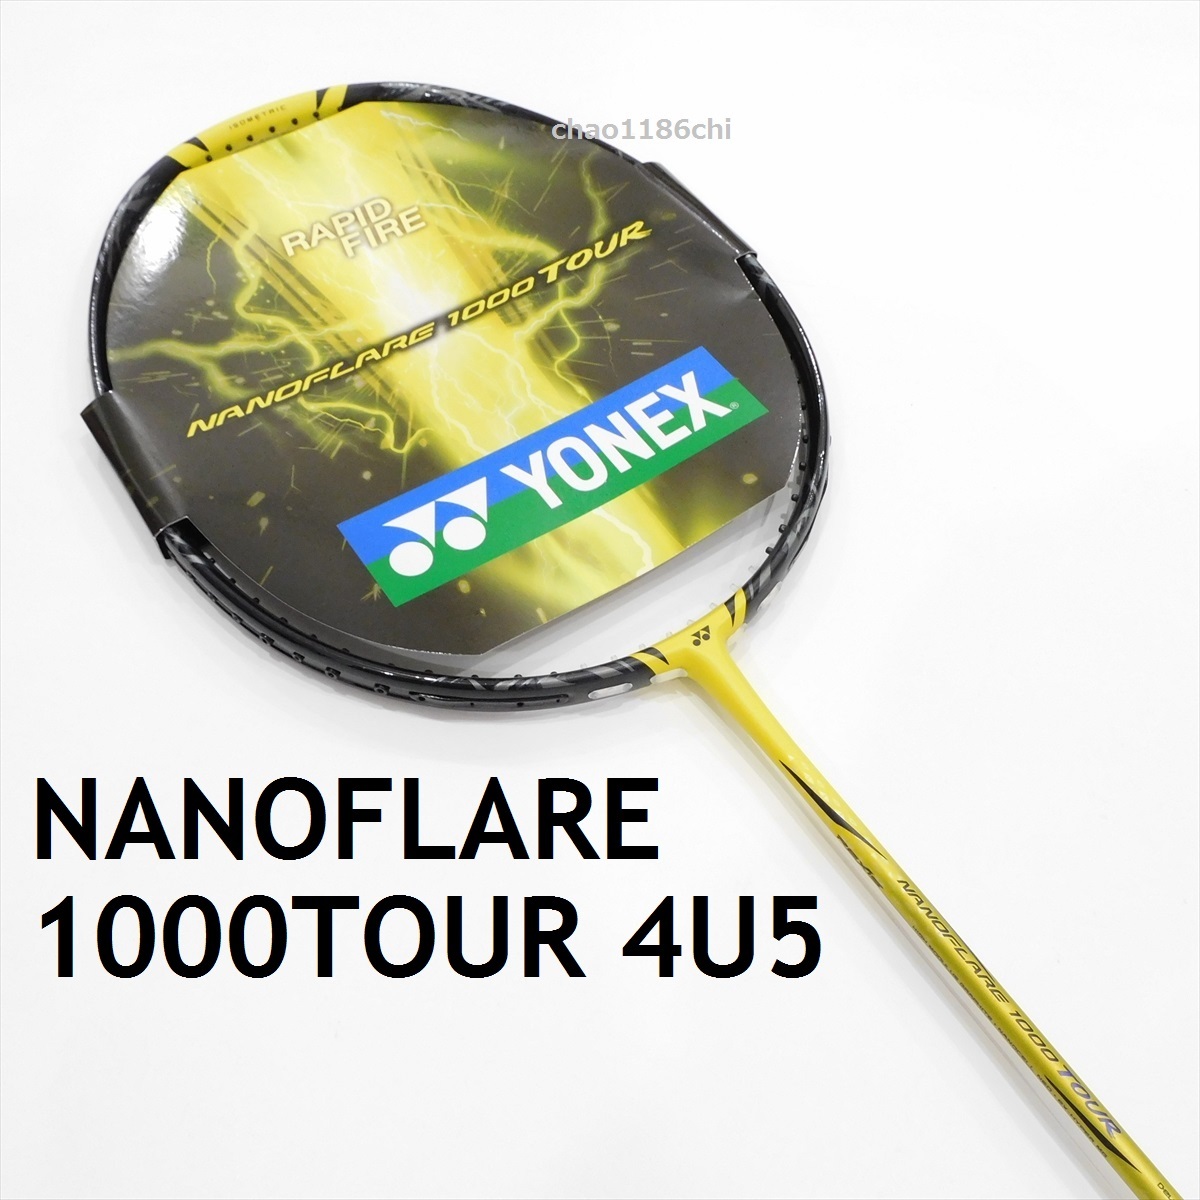 送料込/新品/ヨネックス/4U5/NANOFLARE 1000 TOUR/ナノフレア1000 